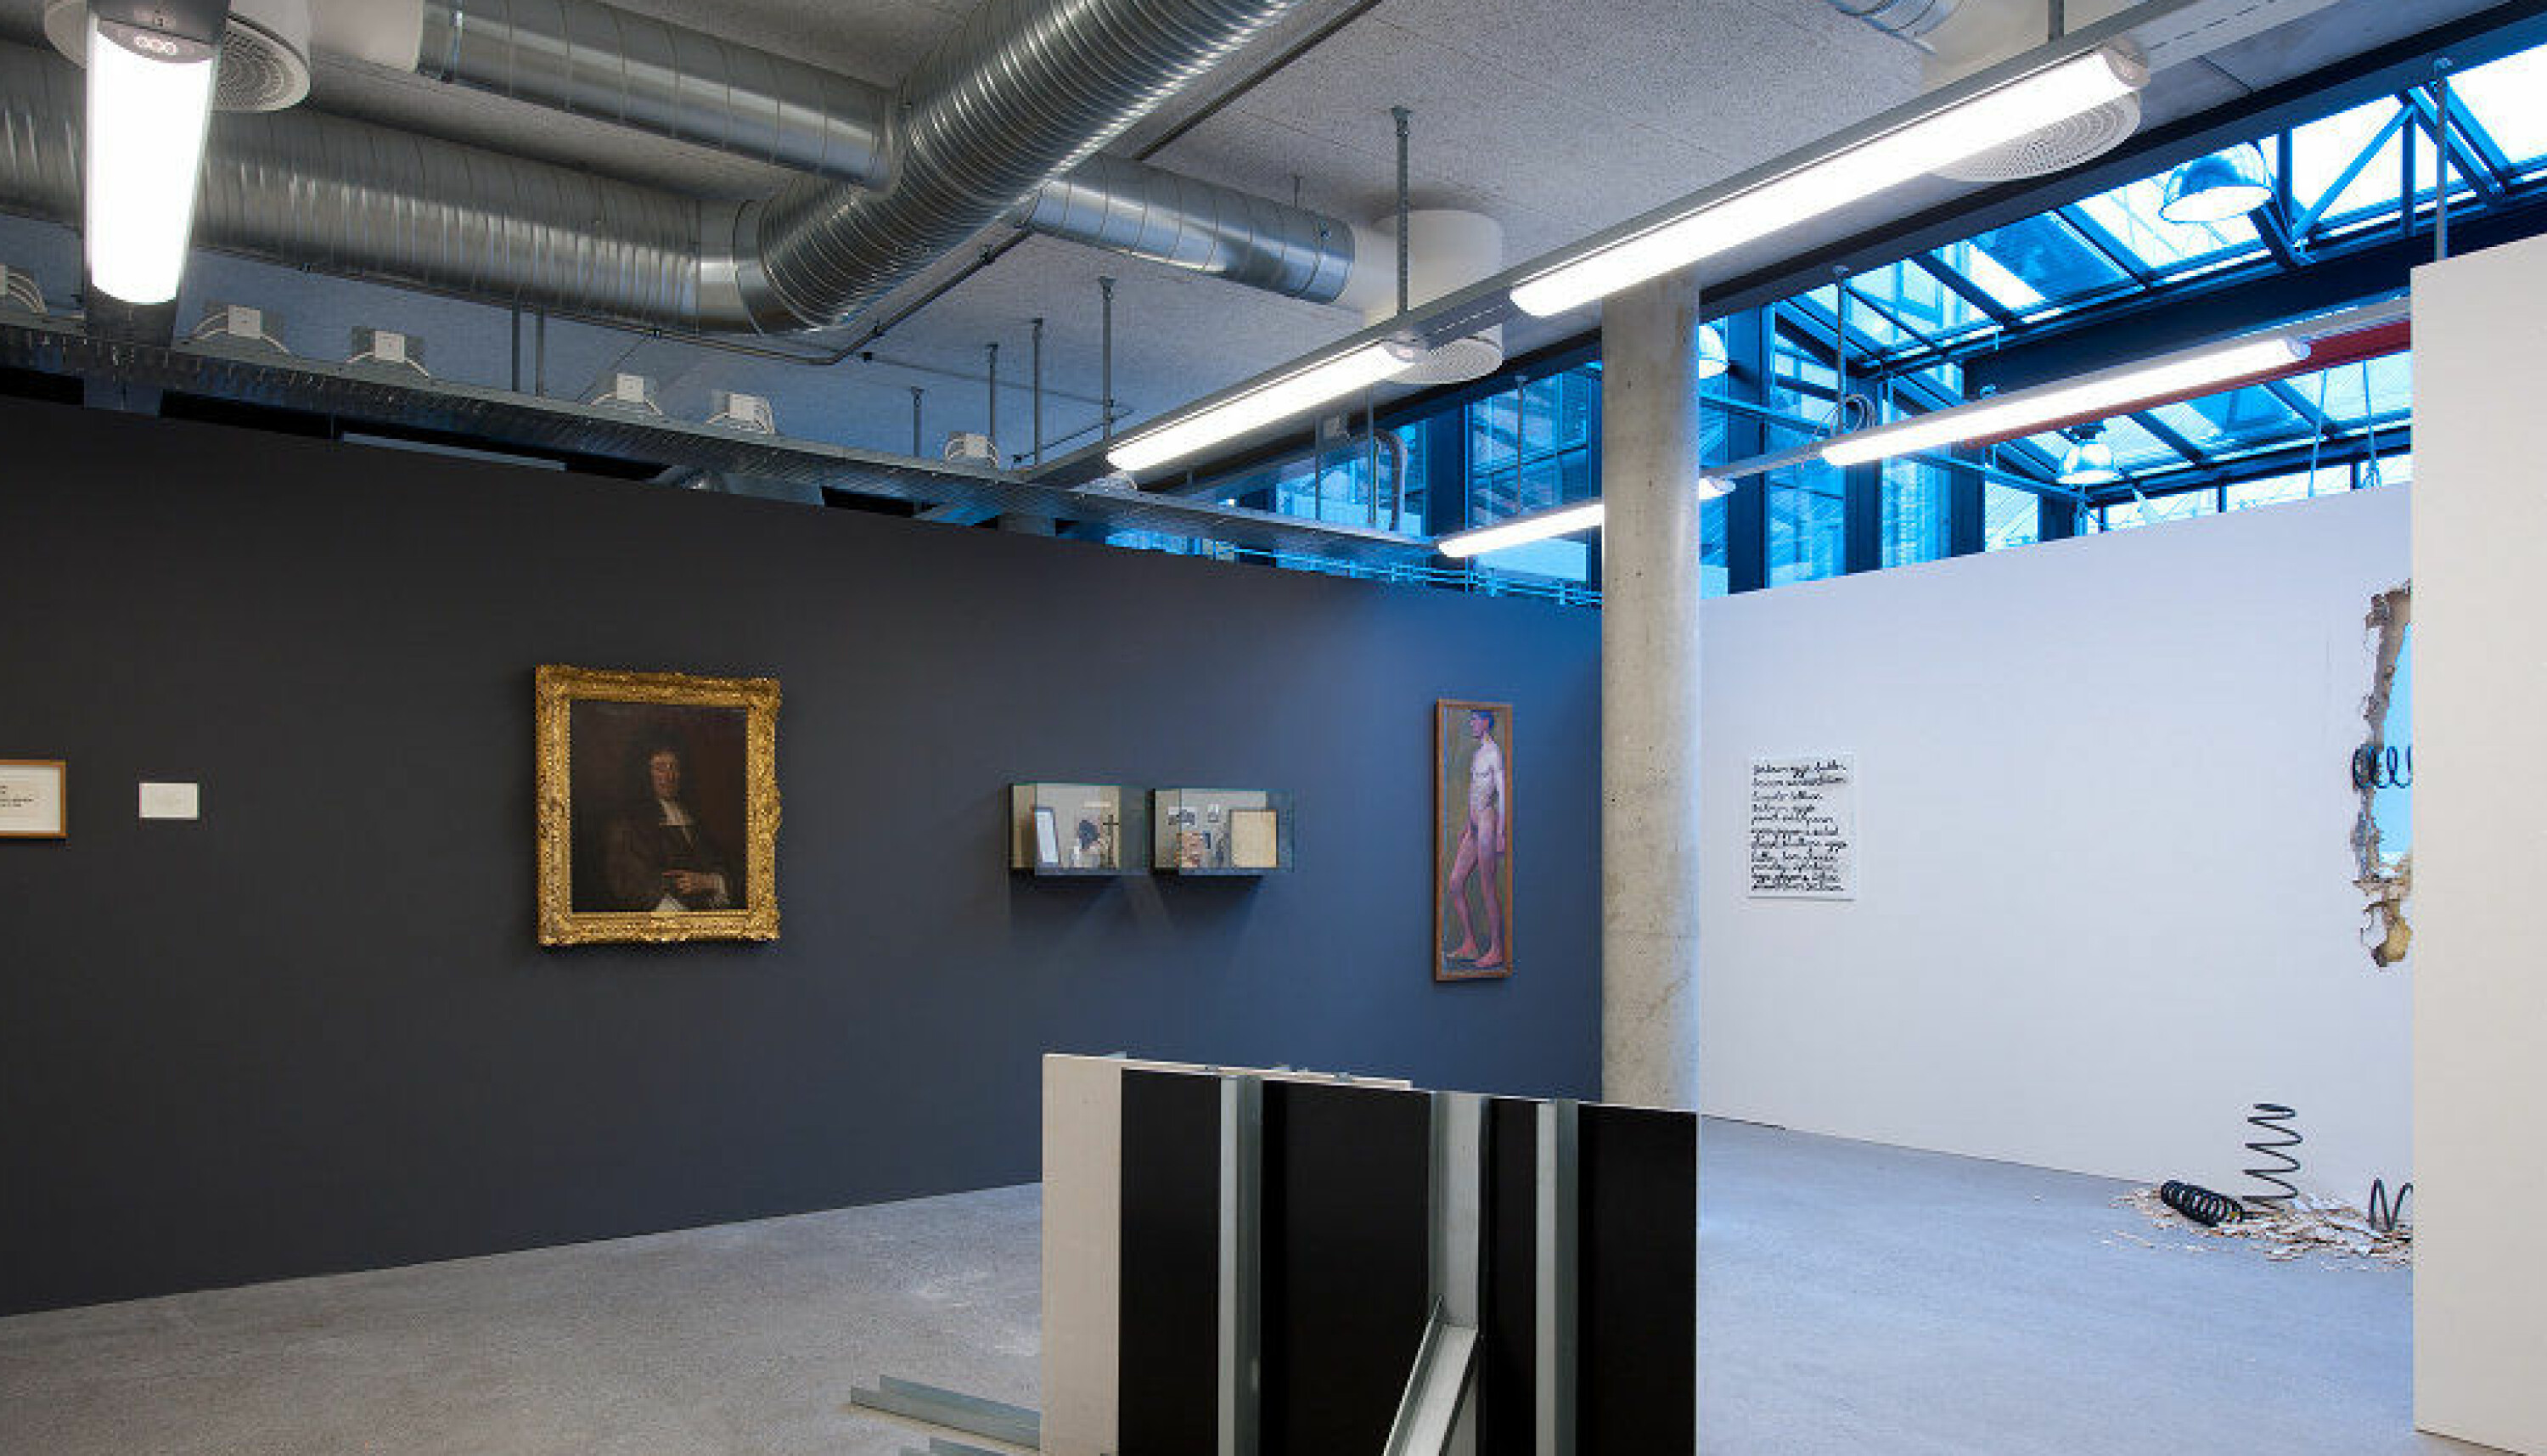 Akten, det høye, avlange maleriet i hjørnet av rommet på dette bildet, er malt av Thorvald Erichsen. Bildet er tatt i 2010 fra utstillingen -akademi; satt opp av Dag Erik Elgin.